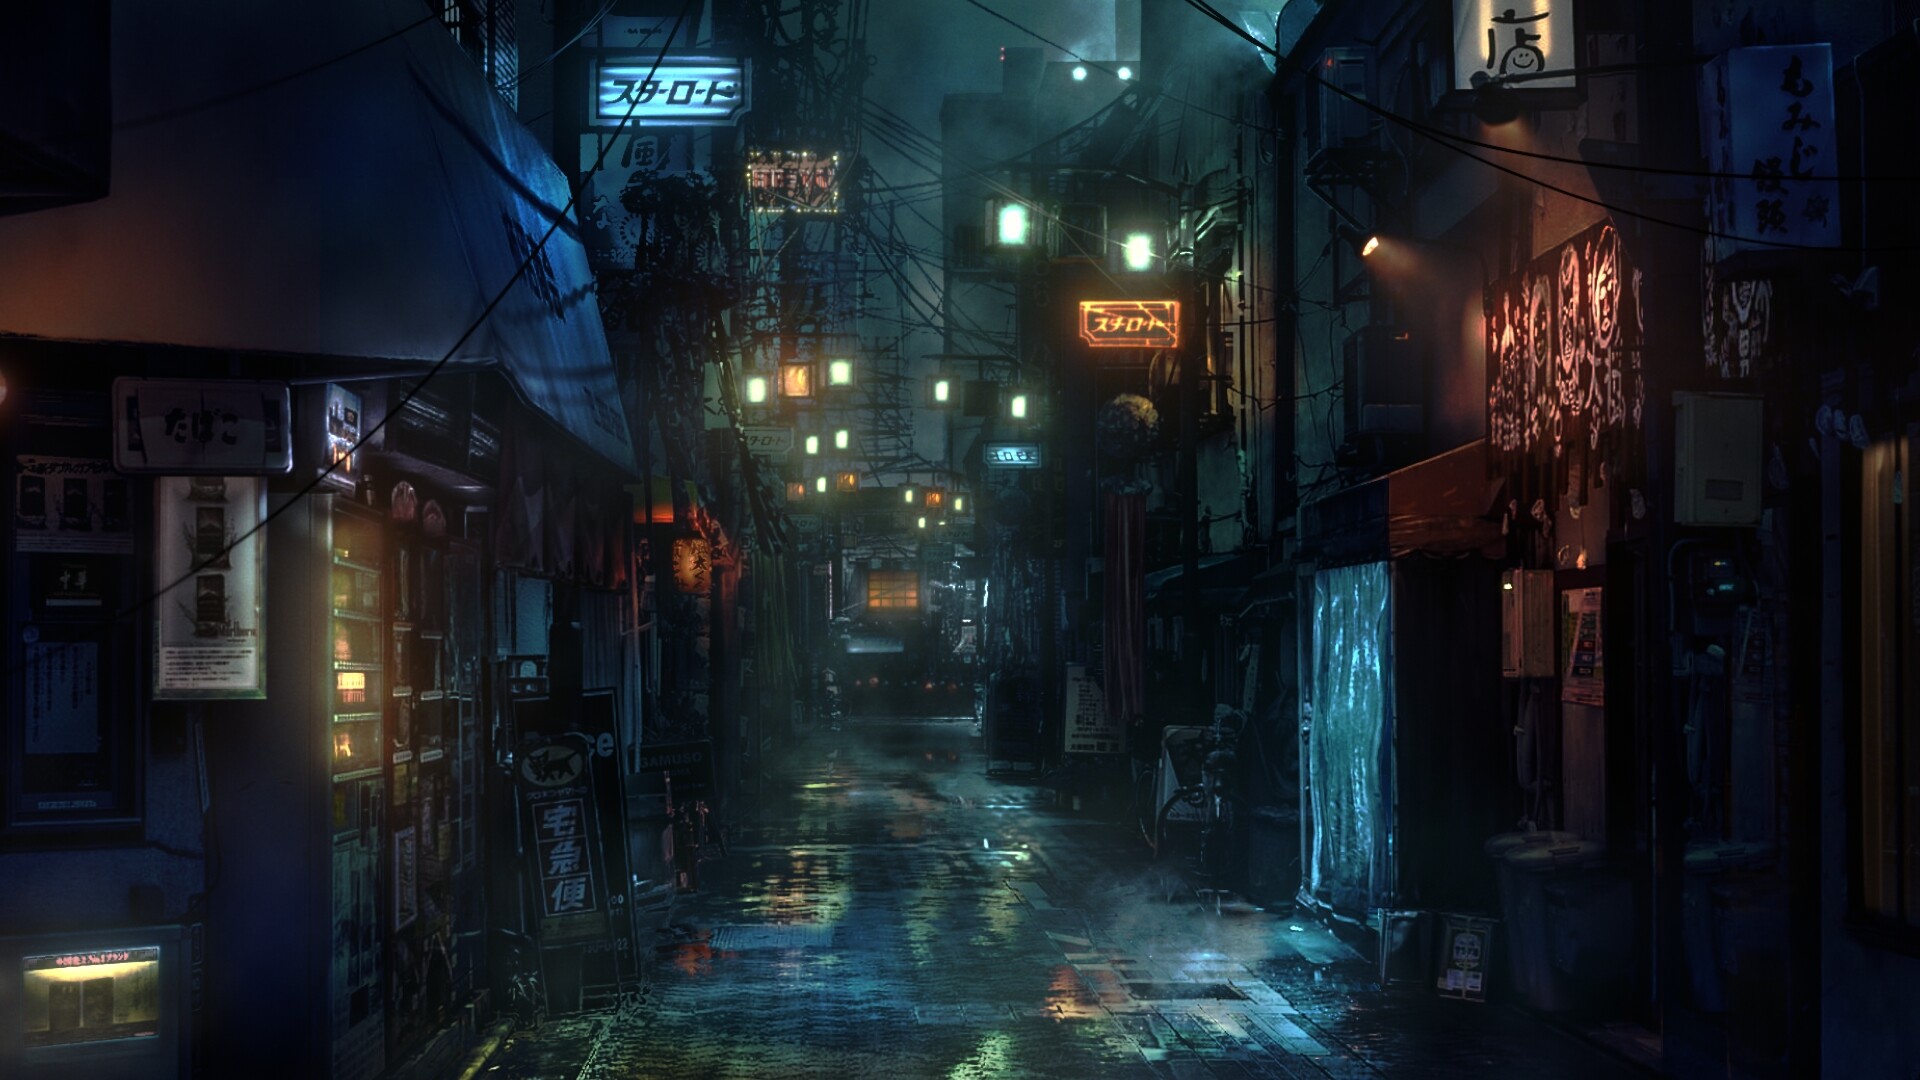 ArtStation - Cyberpunk Alley